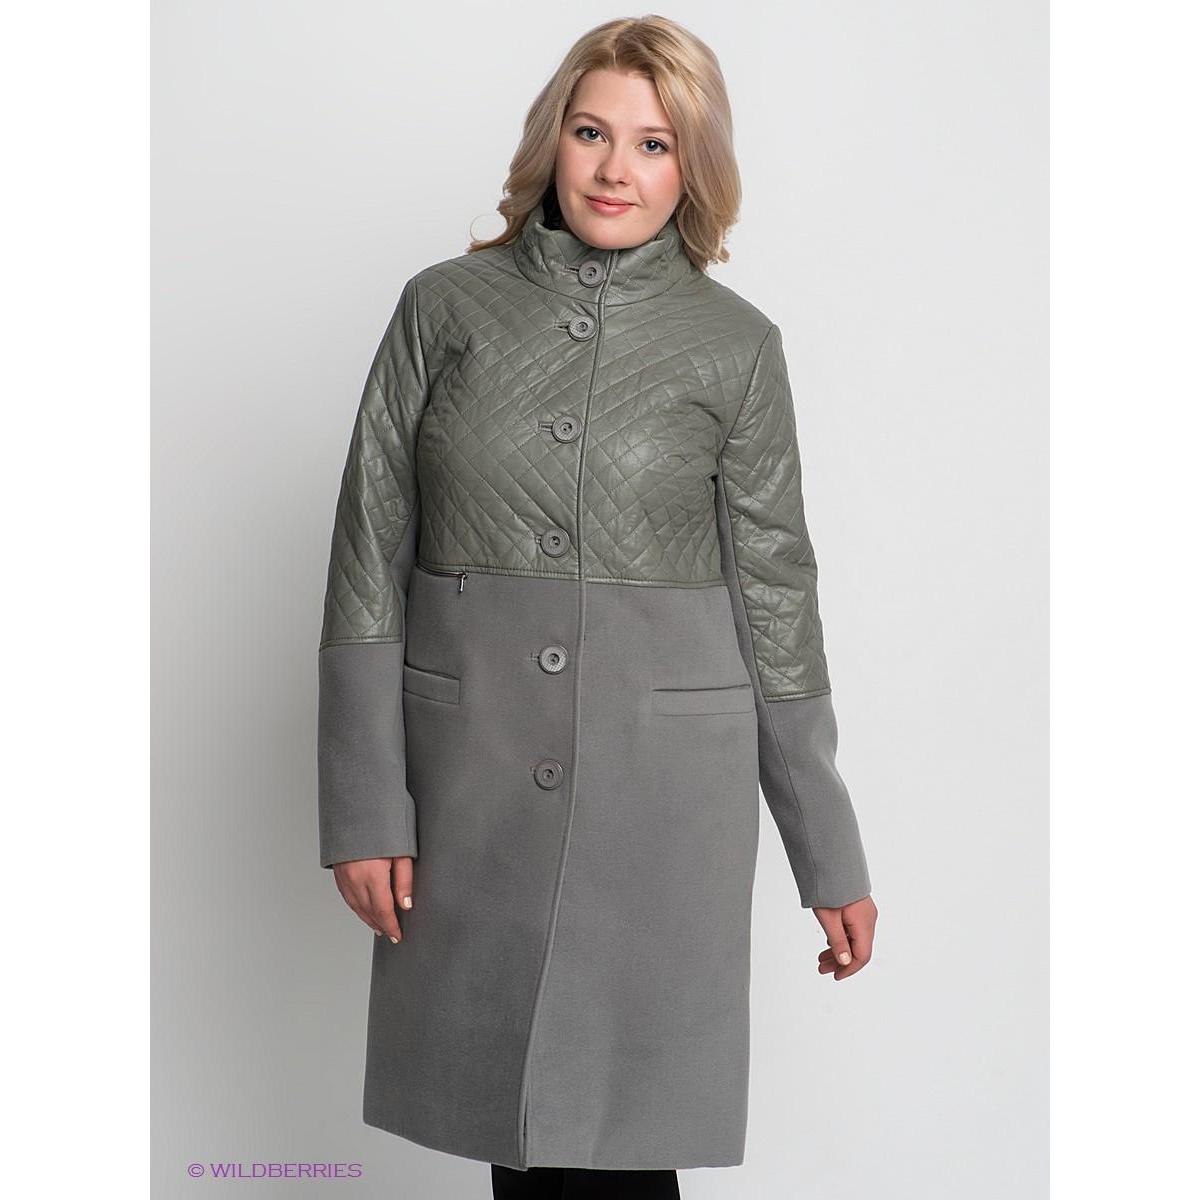 Полупальто женское демисезонное больших размеров. Женские пальто Dimma. Пальто деми 45+. Пальто #166475 Dimma женская. Зимнее пальто для полных женщин.